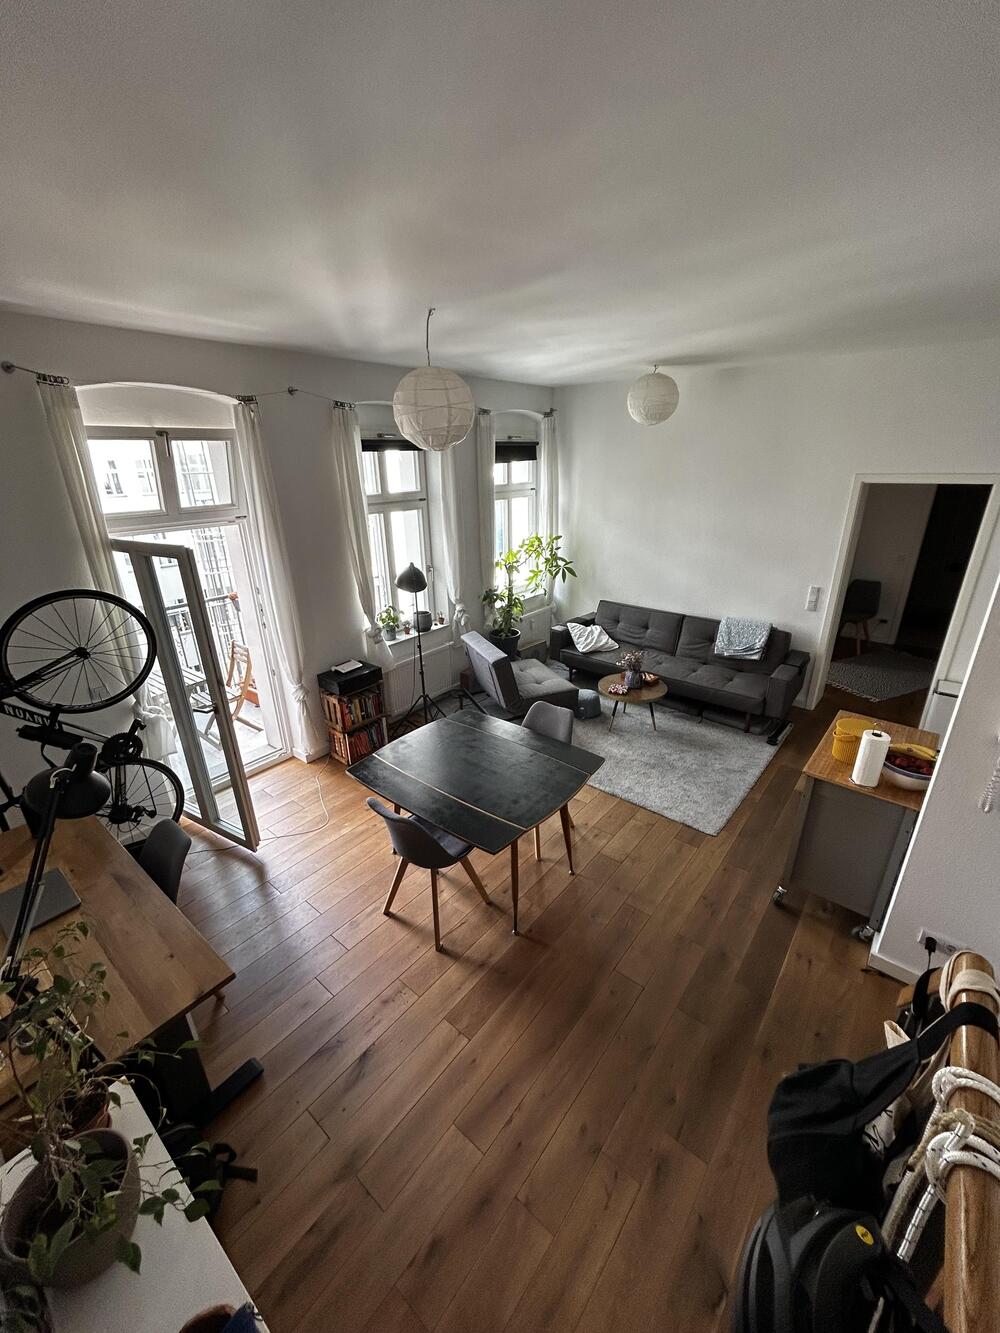 Tausche moderne Wohnung in Berlin gegen eine Wohnung in...